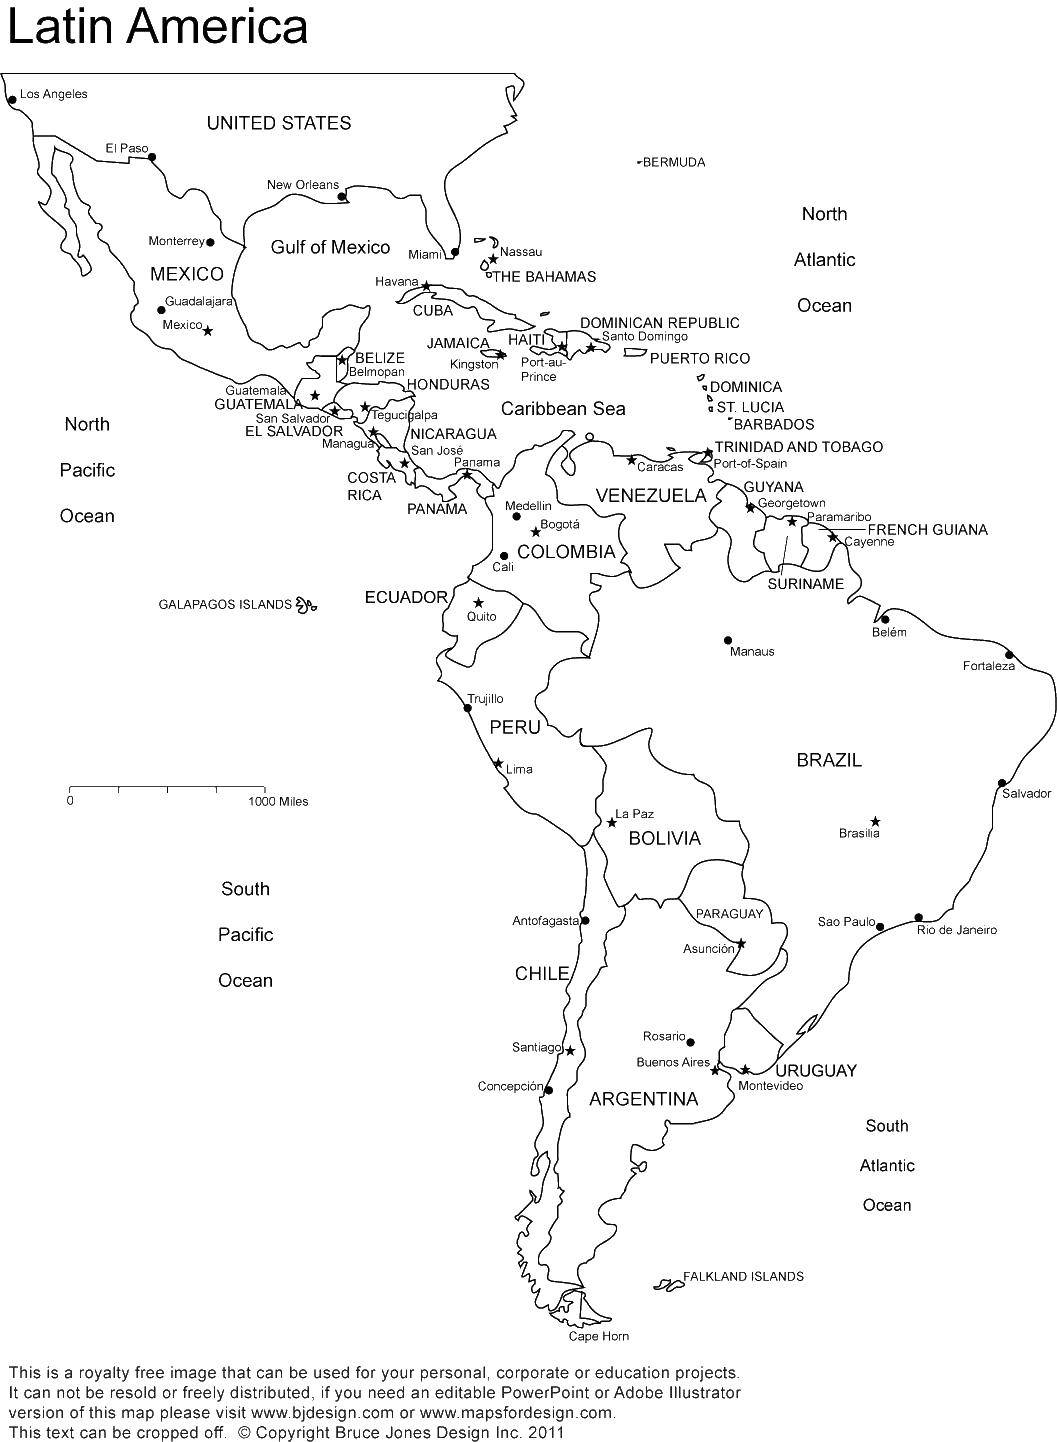 Название: Раскраска Латинская америка. Категория: Карты. Теги: Карта, мир.